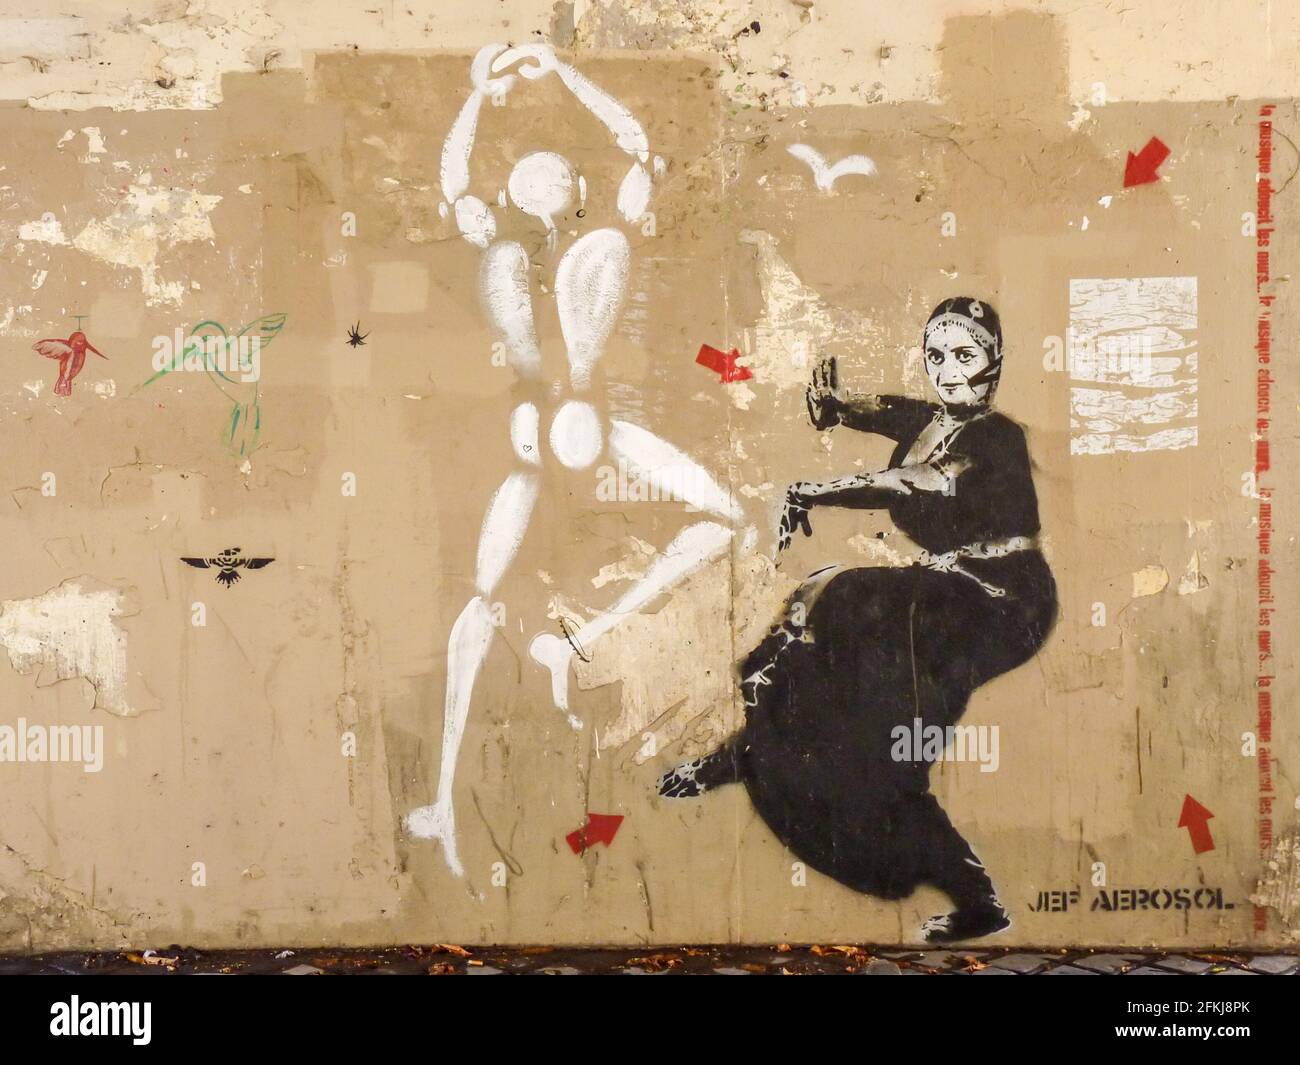 Street Art mit einer tanzenden weiblichen Figur in ethnischer Tracht in schwarz und bemalter weißer Menschenfigur. Graffiti von Jeff Aerosol, Paris. Stockfoto